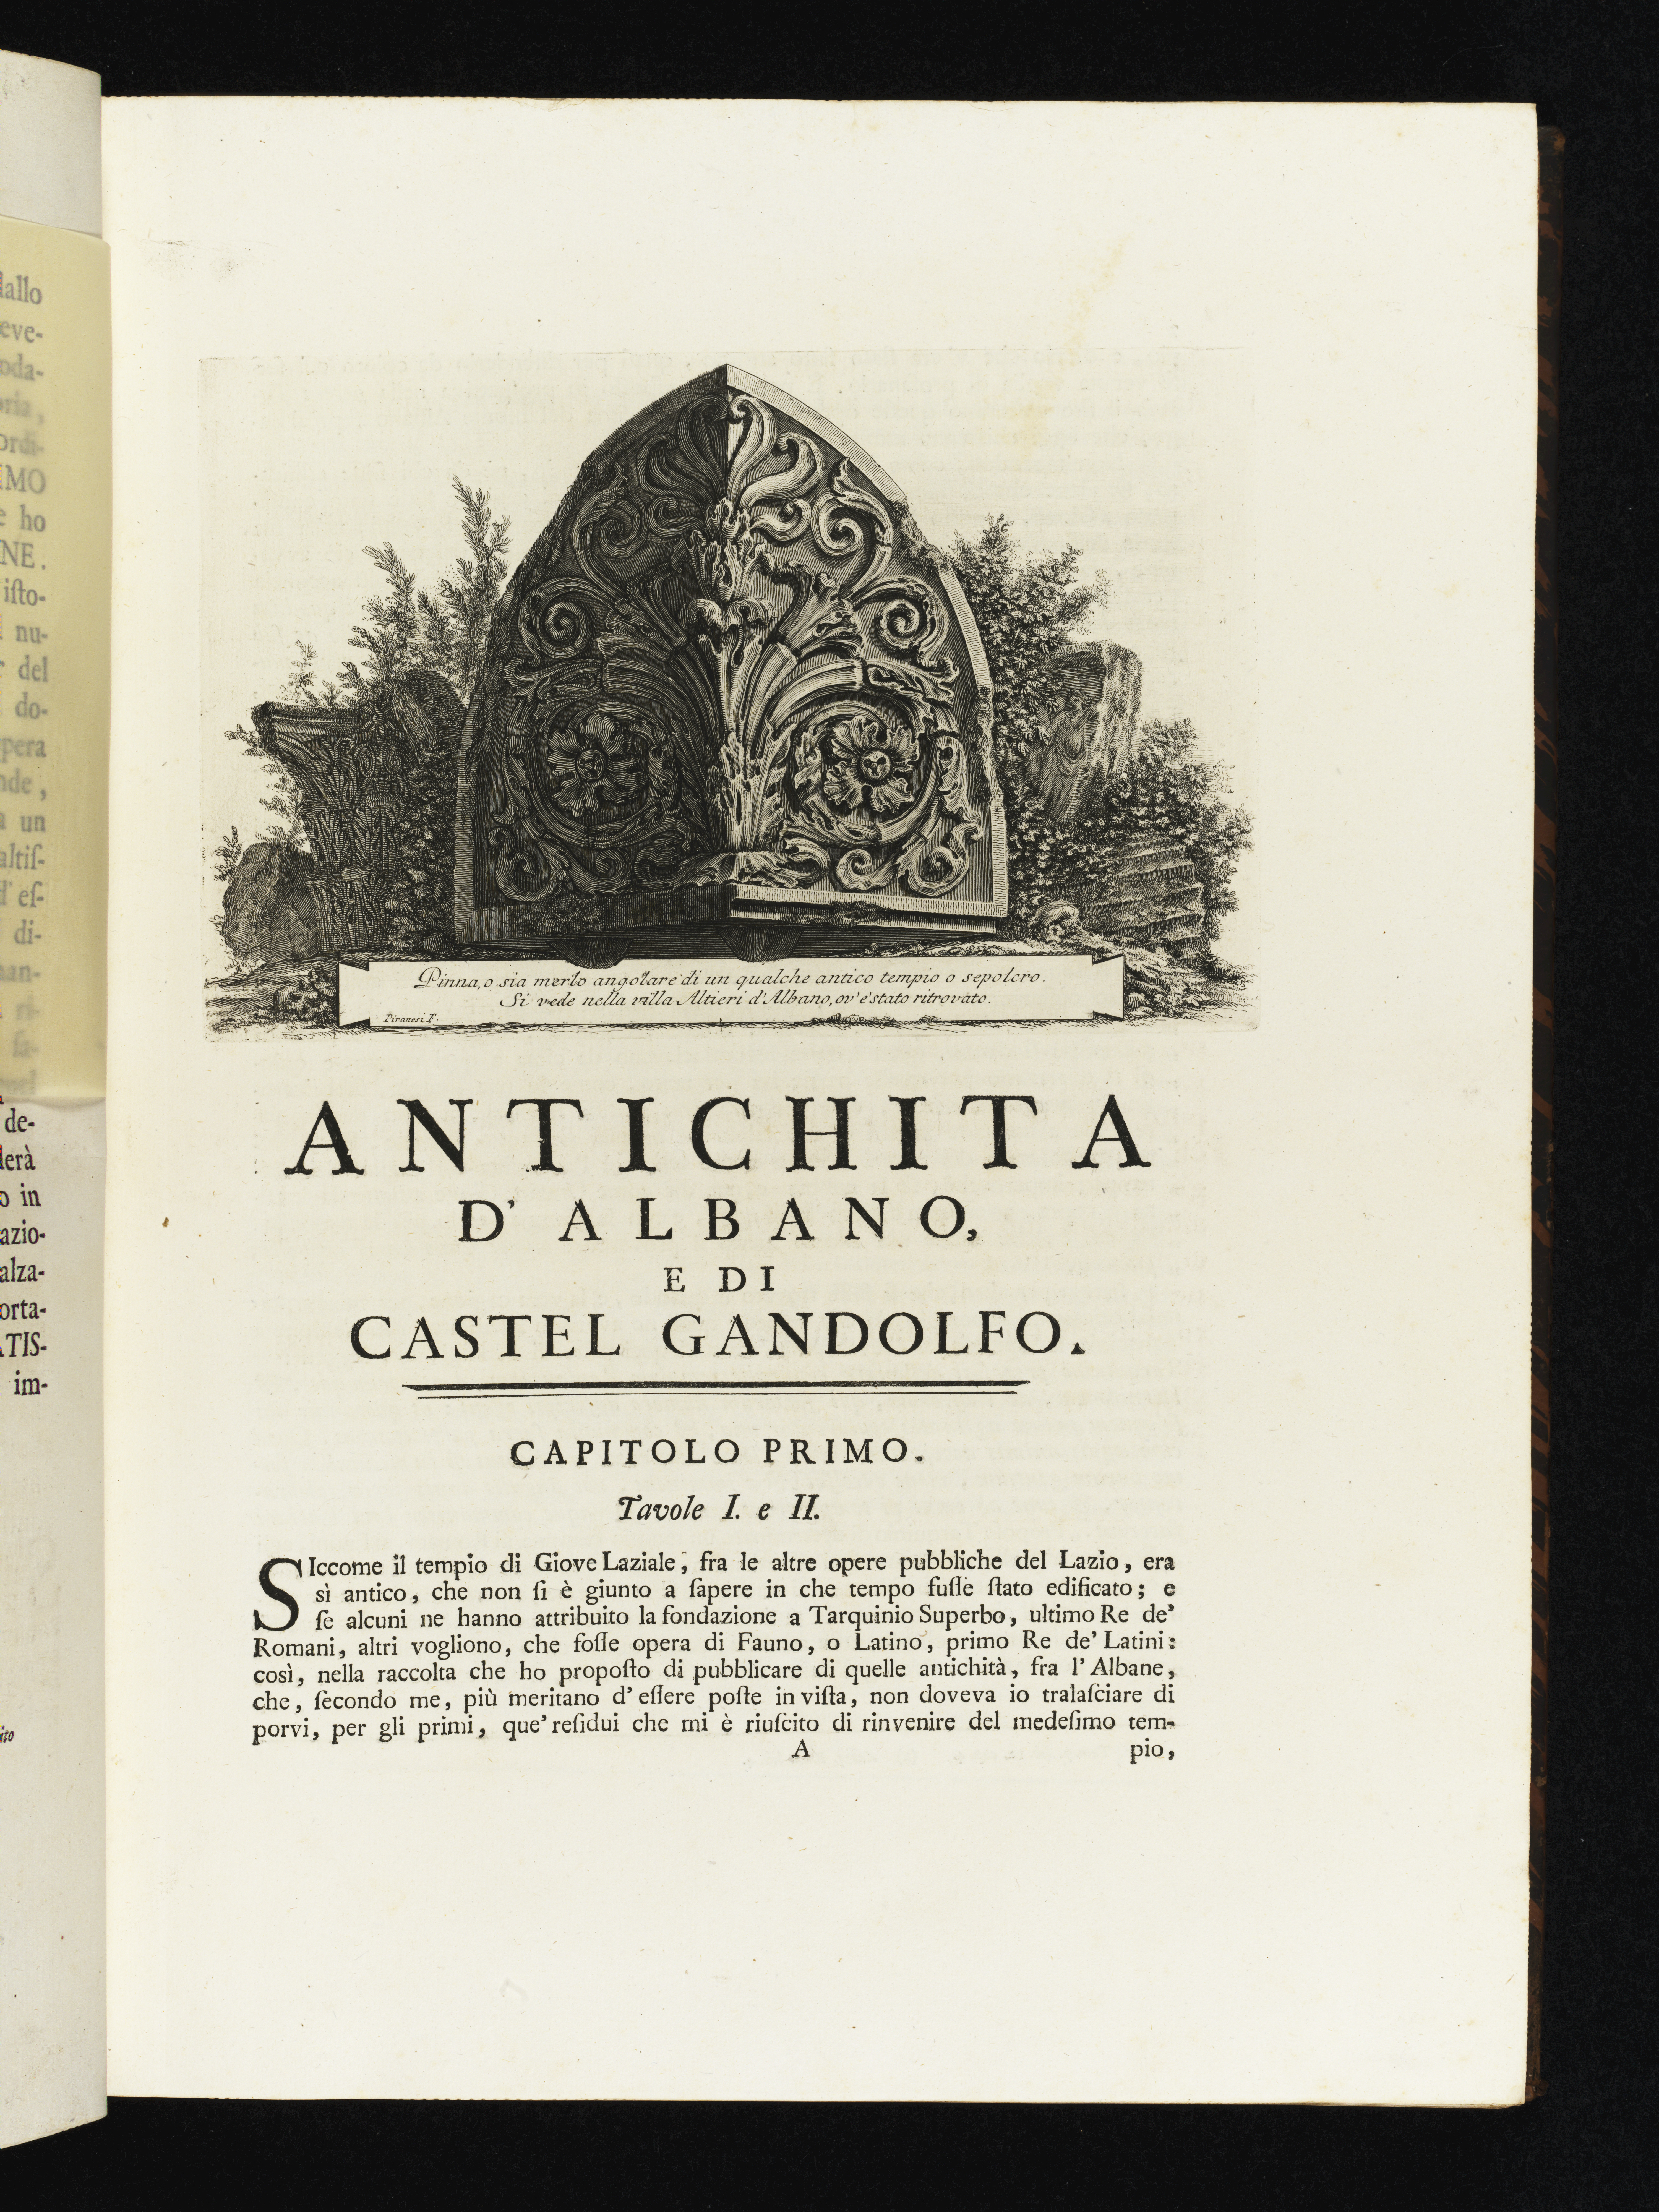 Radierung Piranesis. Titelseite der Publikation Antichità d'Albano e di Castel Gandolfo mit Darstellung eines Akroters über dem Titel